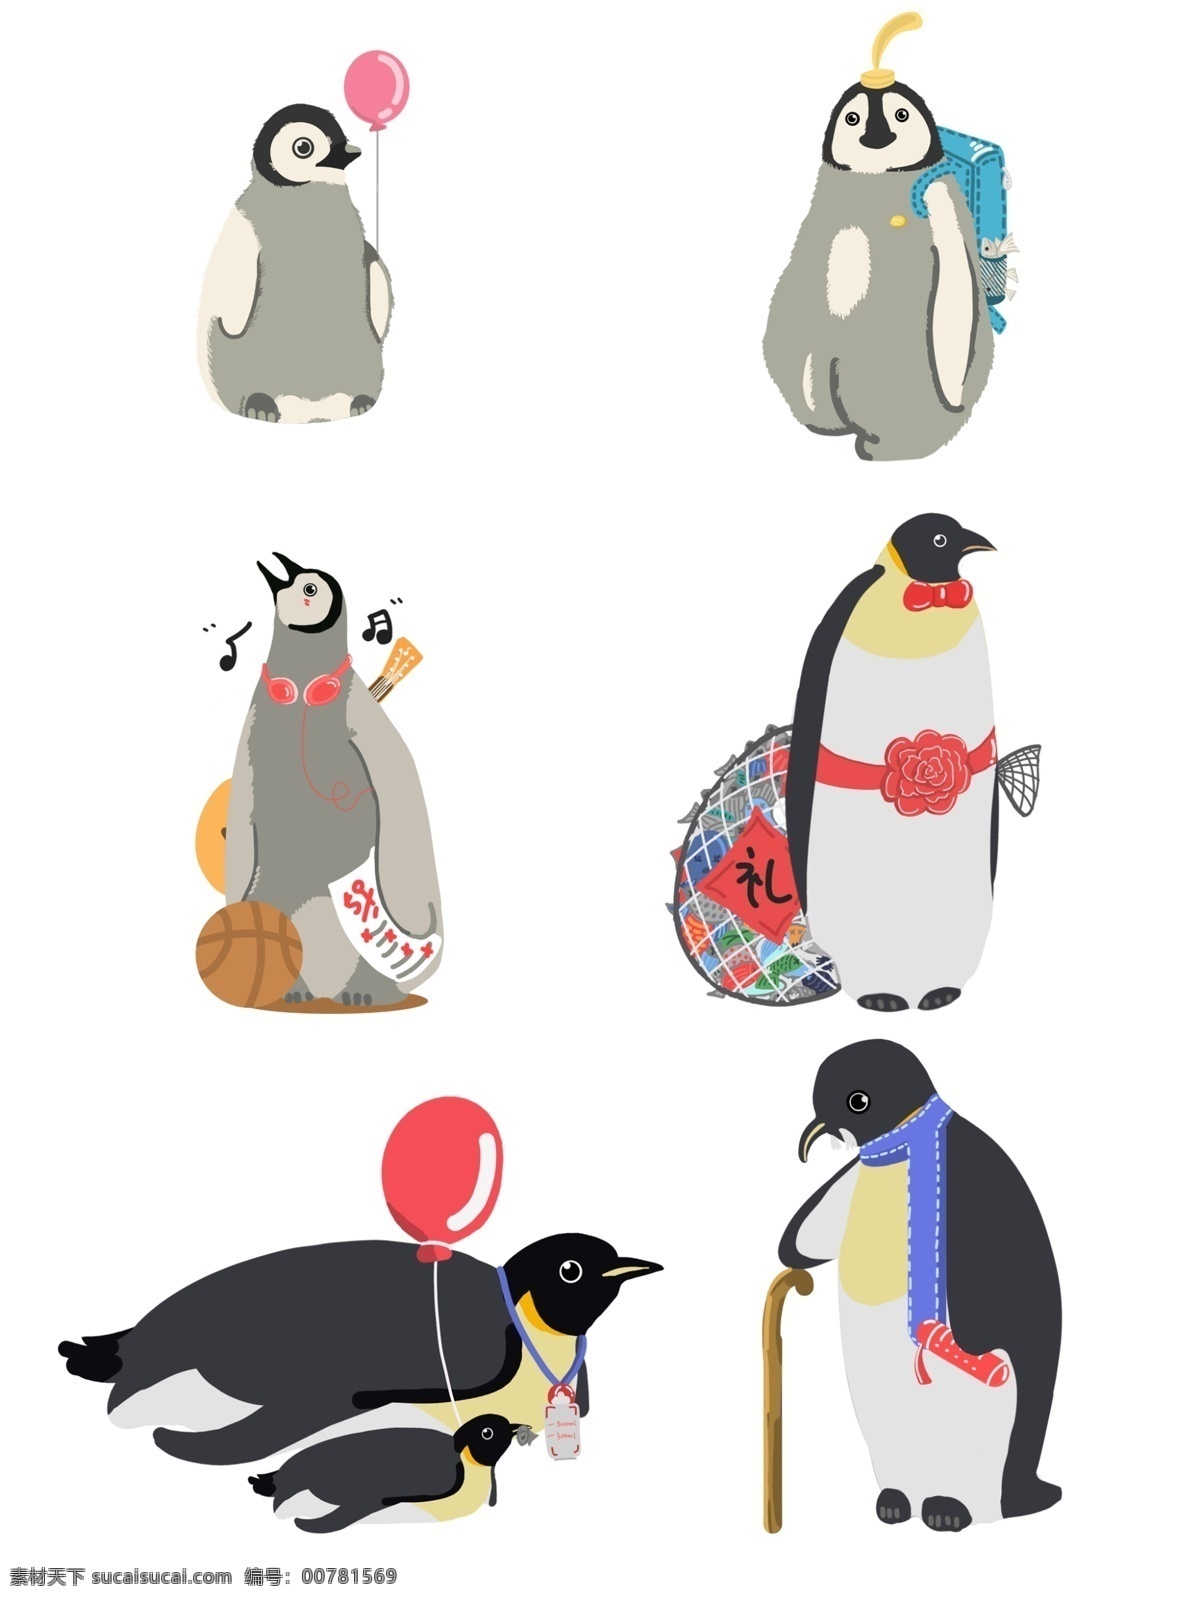 原创 可爱 动物 生长 成长 过程 企鹅 套 图 小清新 创意 元素 动物生长 帝企鹅 圆滚滚 可商用 免抠 一生